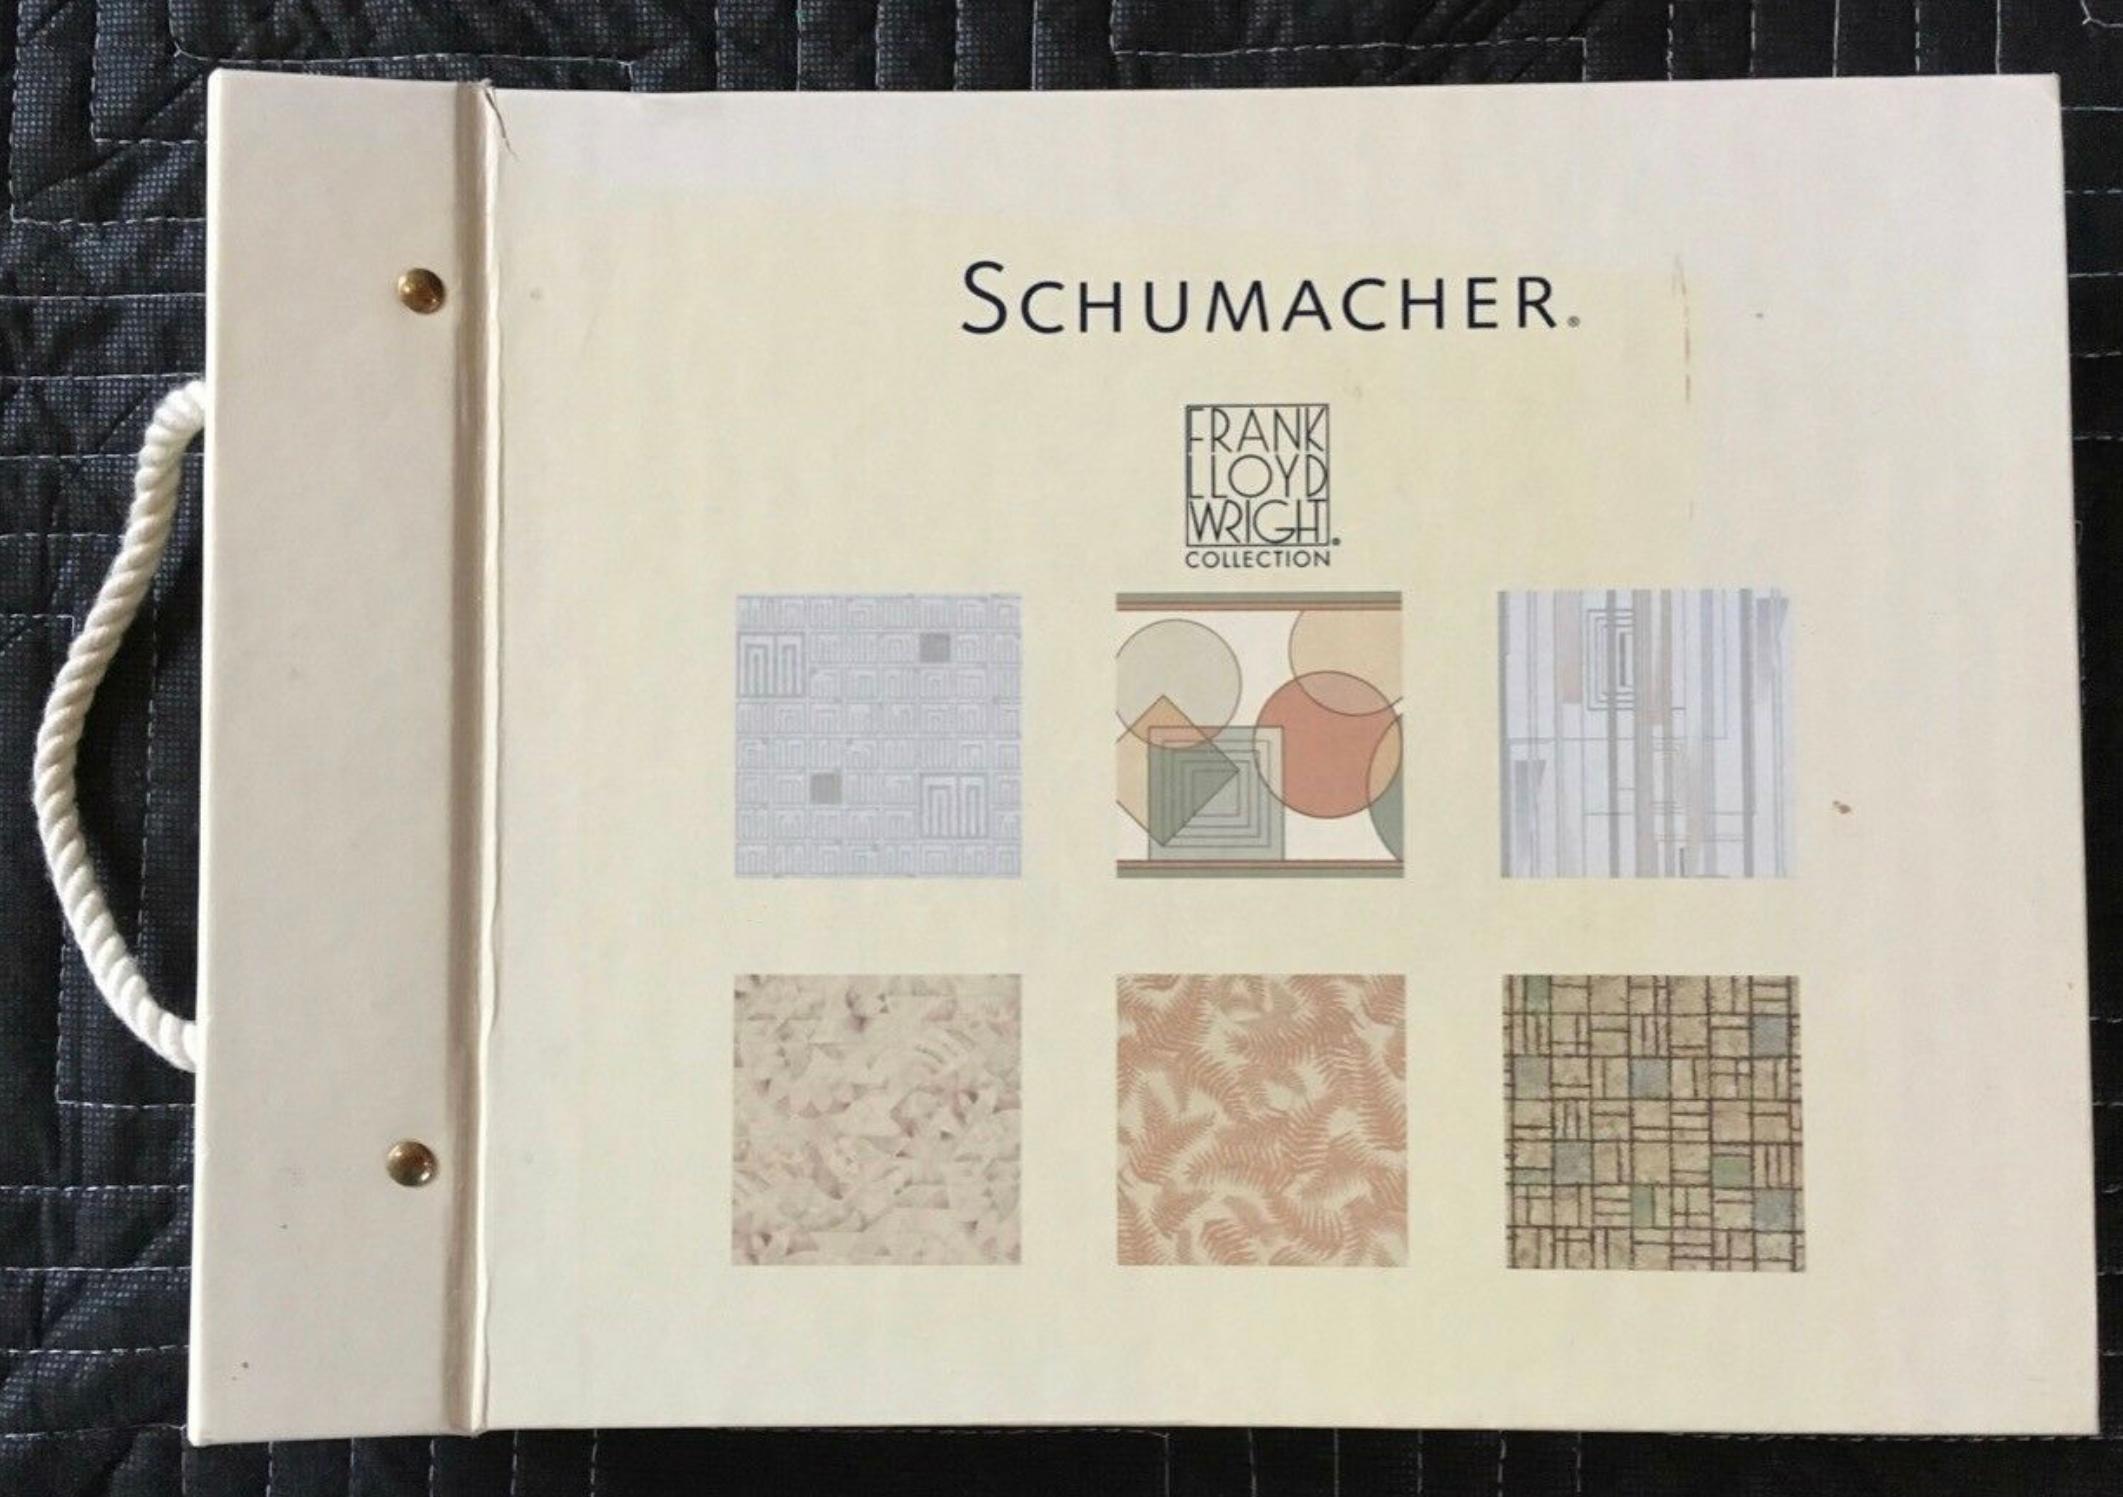 Frank Lloyds Schumacher wallcovering books catalogue reference 1986-1999 - 'Prints inspired by nature' (Impressions inspirées par la nature)
Quiconque s'intéresse un tant soit peu à l'architecture connaît Frank Lloyd Wright. Demandez à quelqu'un de